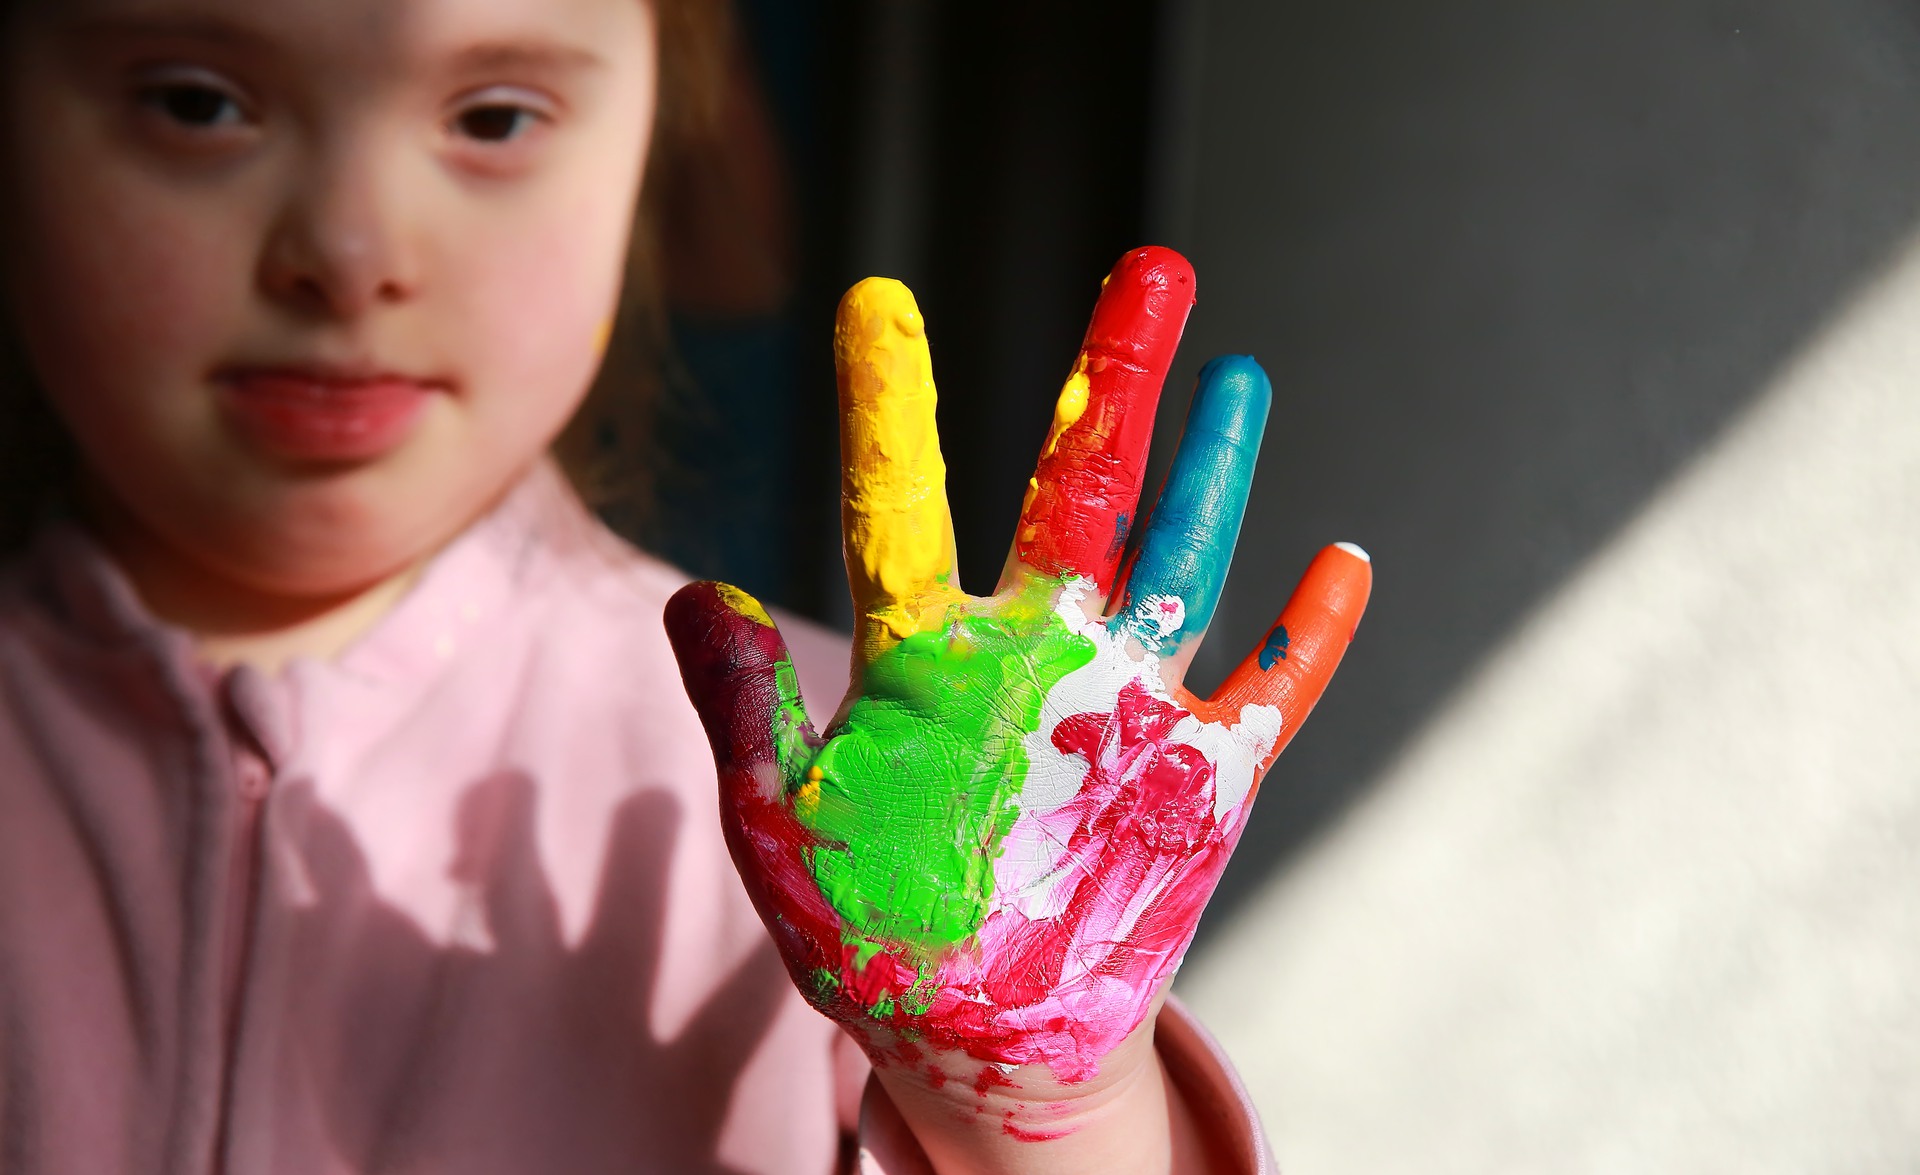 Flicka med downs syndrom med målad hand. Foto: DenysKuvaiev/Mostphotos 